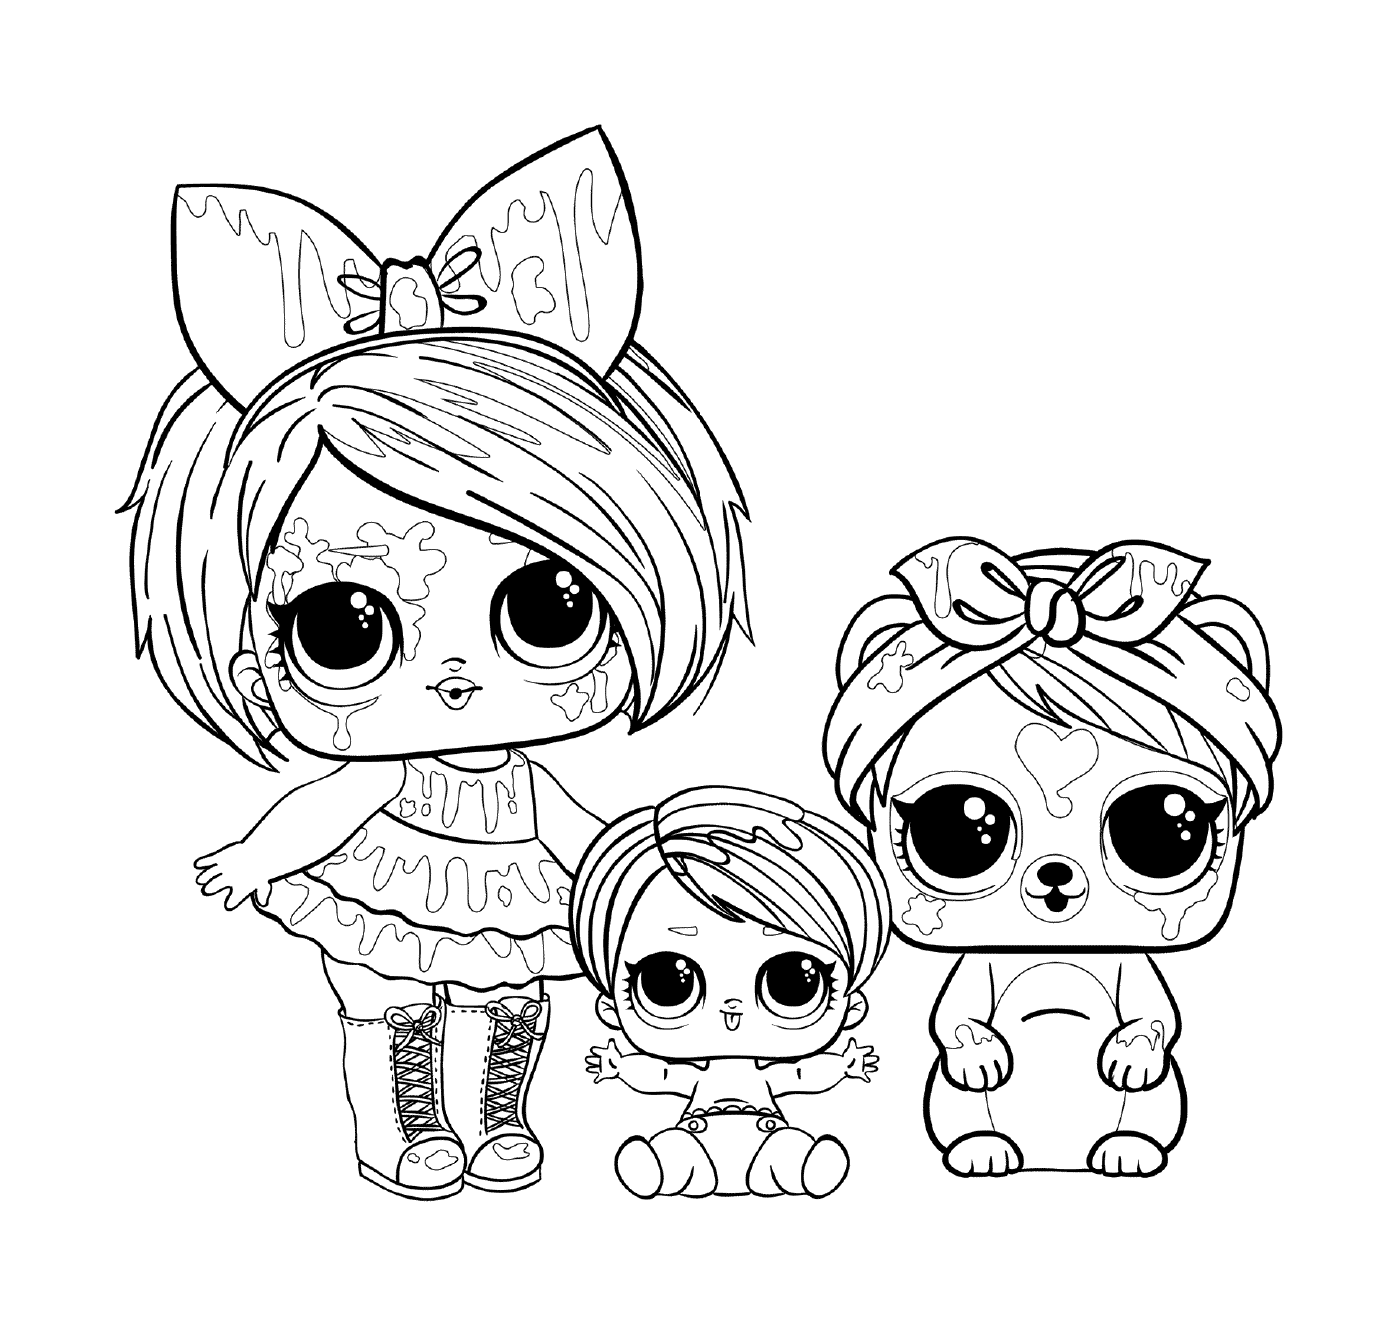  Tre bambole 